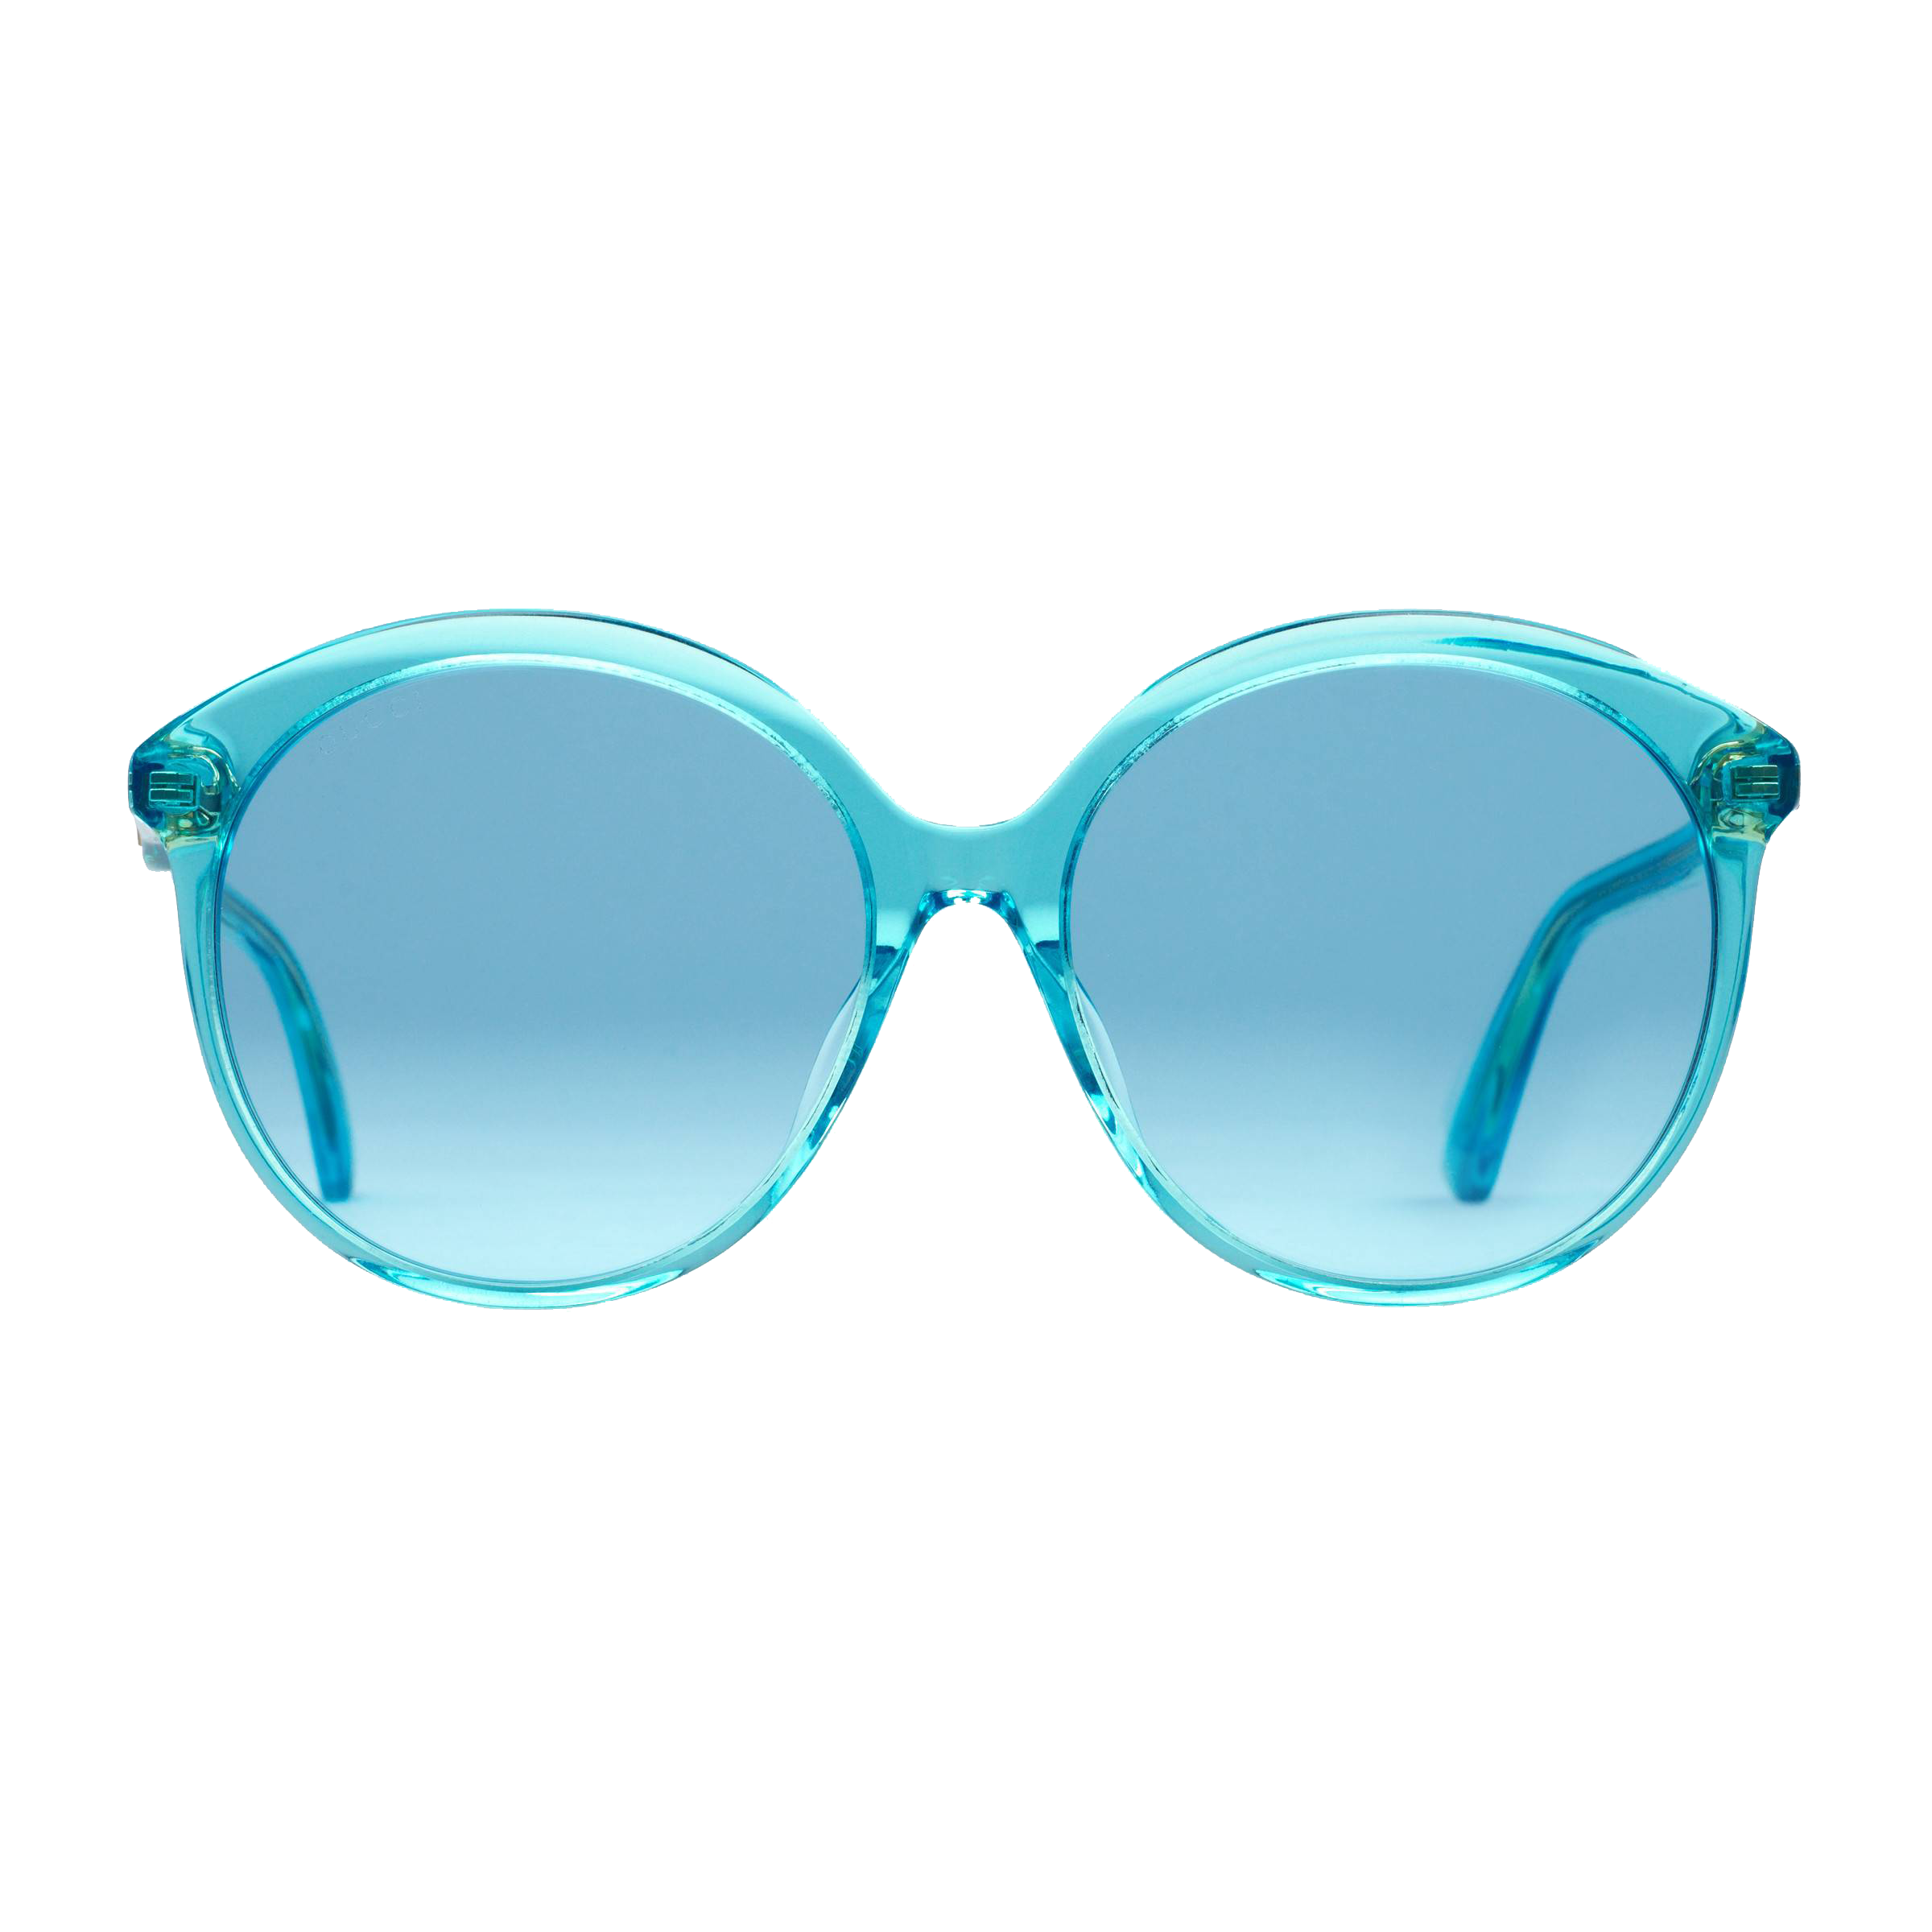 clipart sunglasses bright